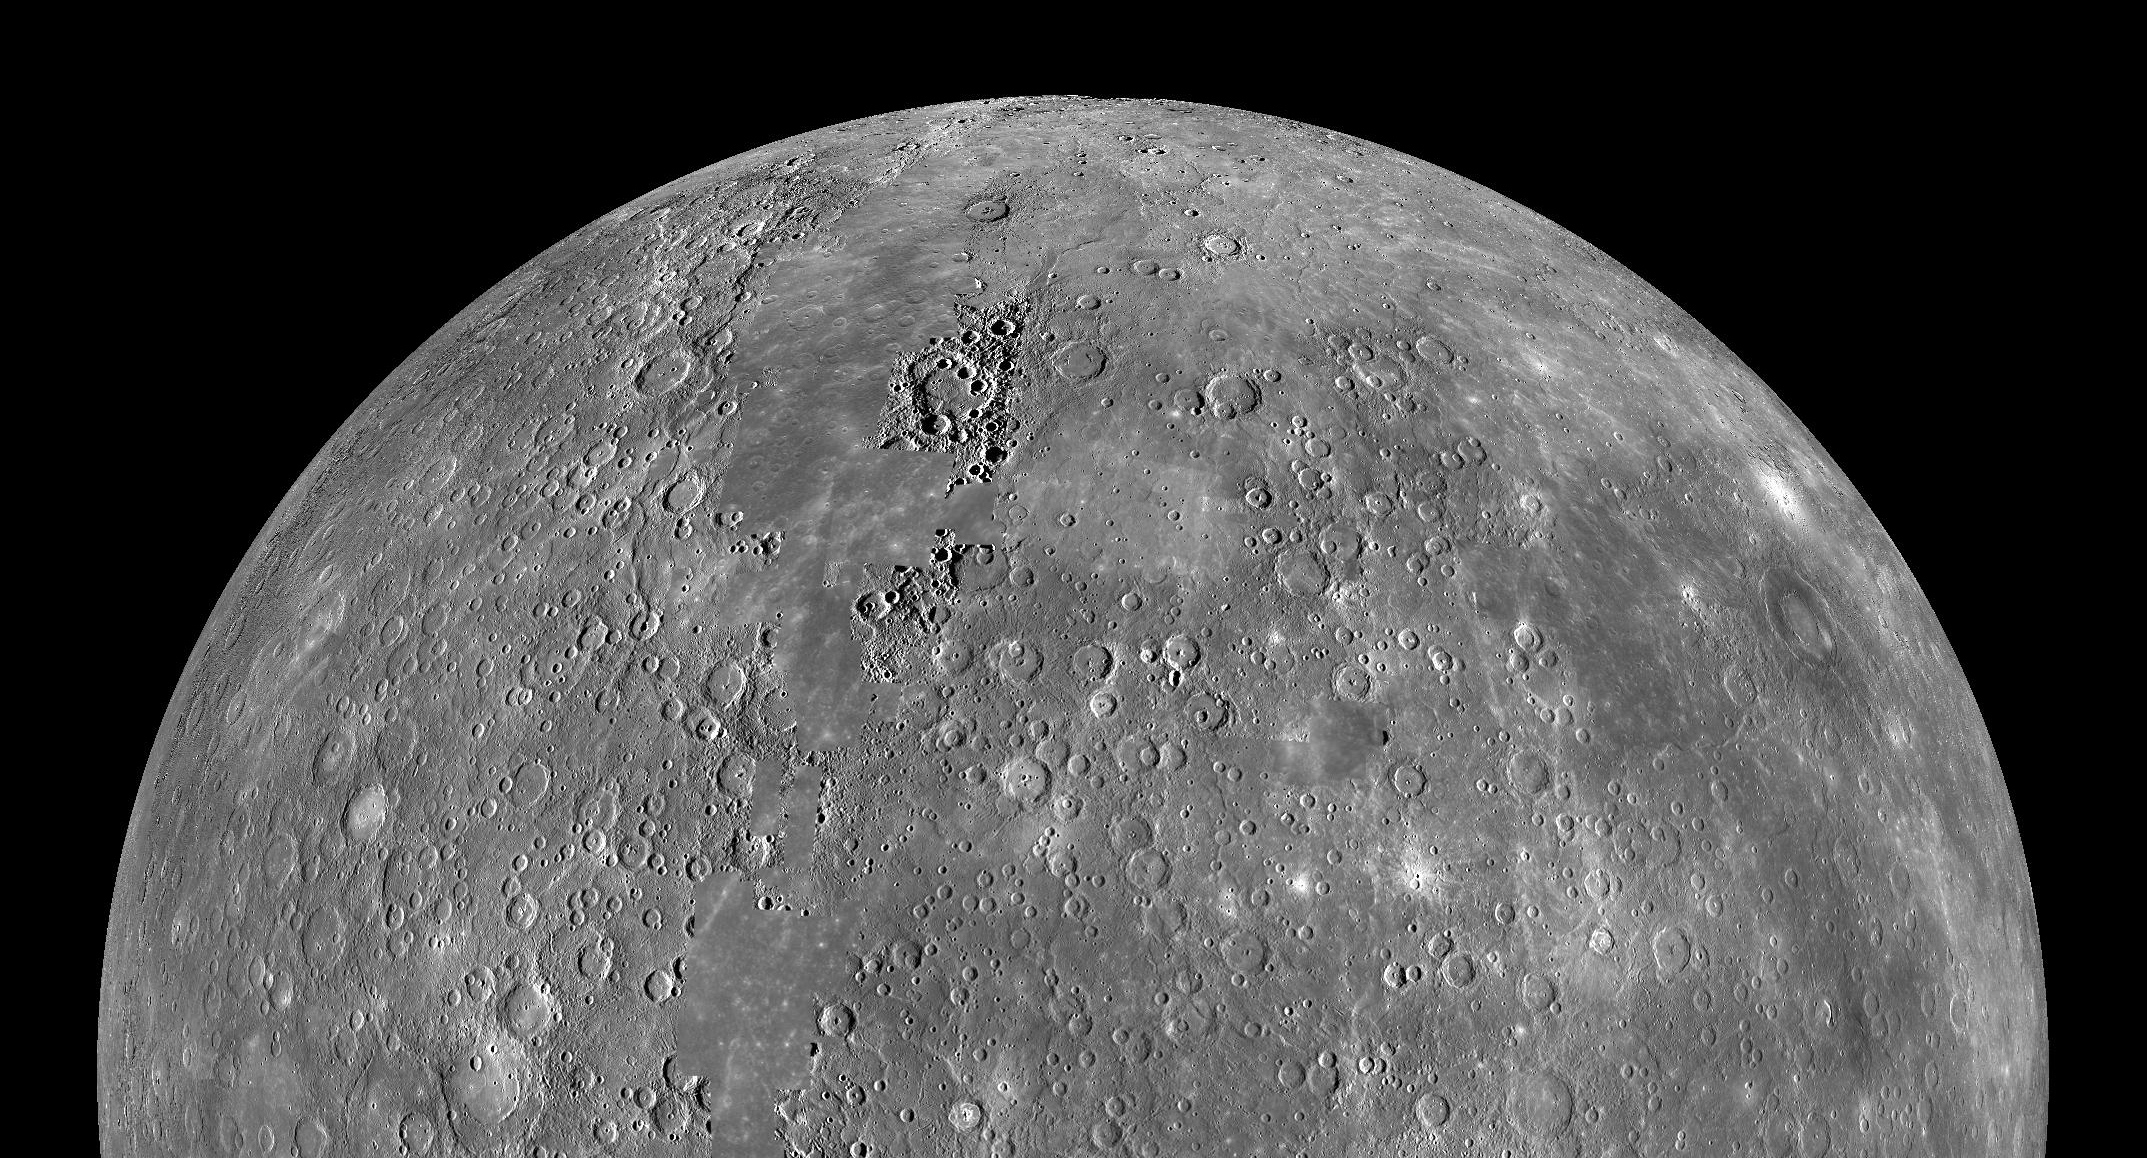 La planète Mercure a-t-elle toujours une activité tectonique ? © Nasa, image composite